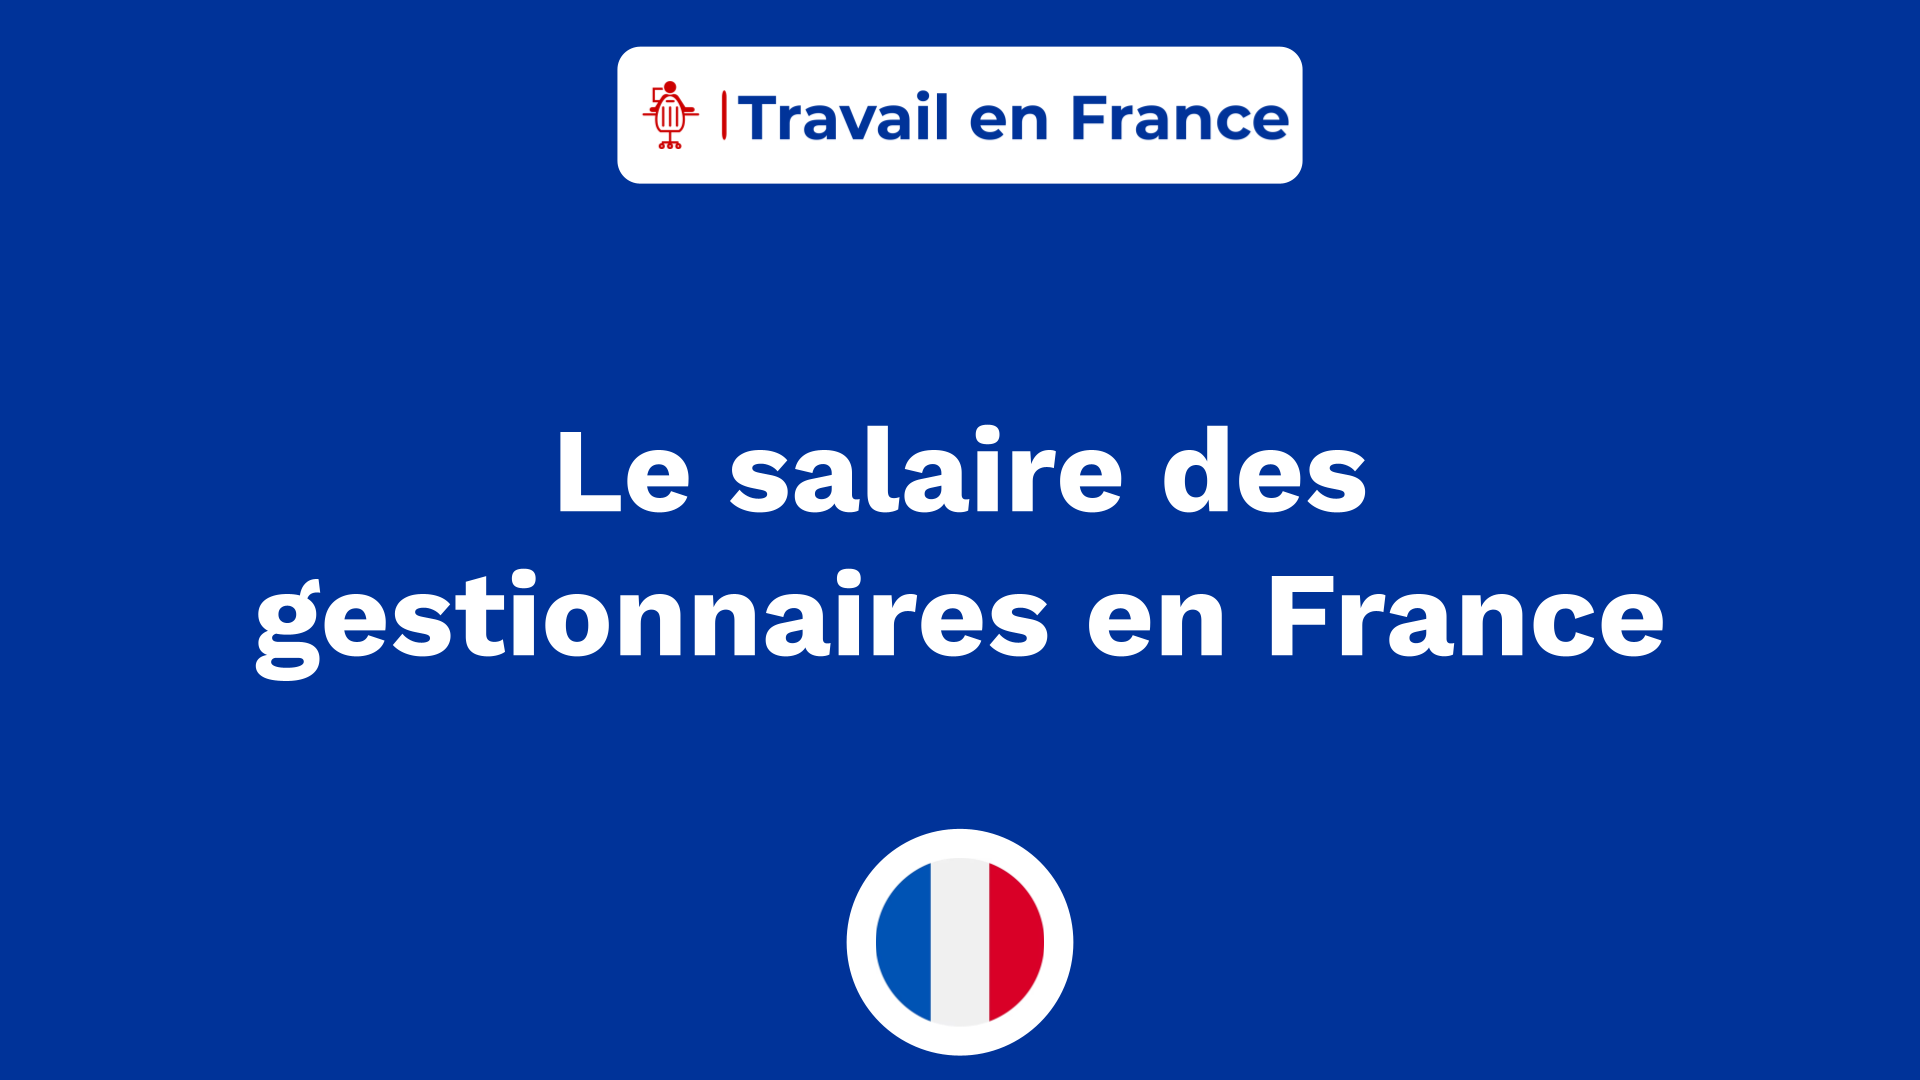 Le salaire des gestionnaires en France